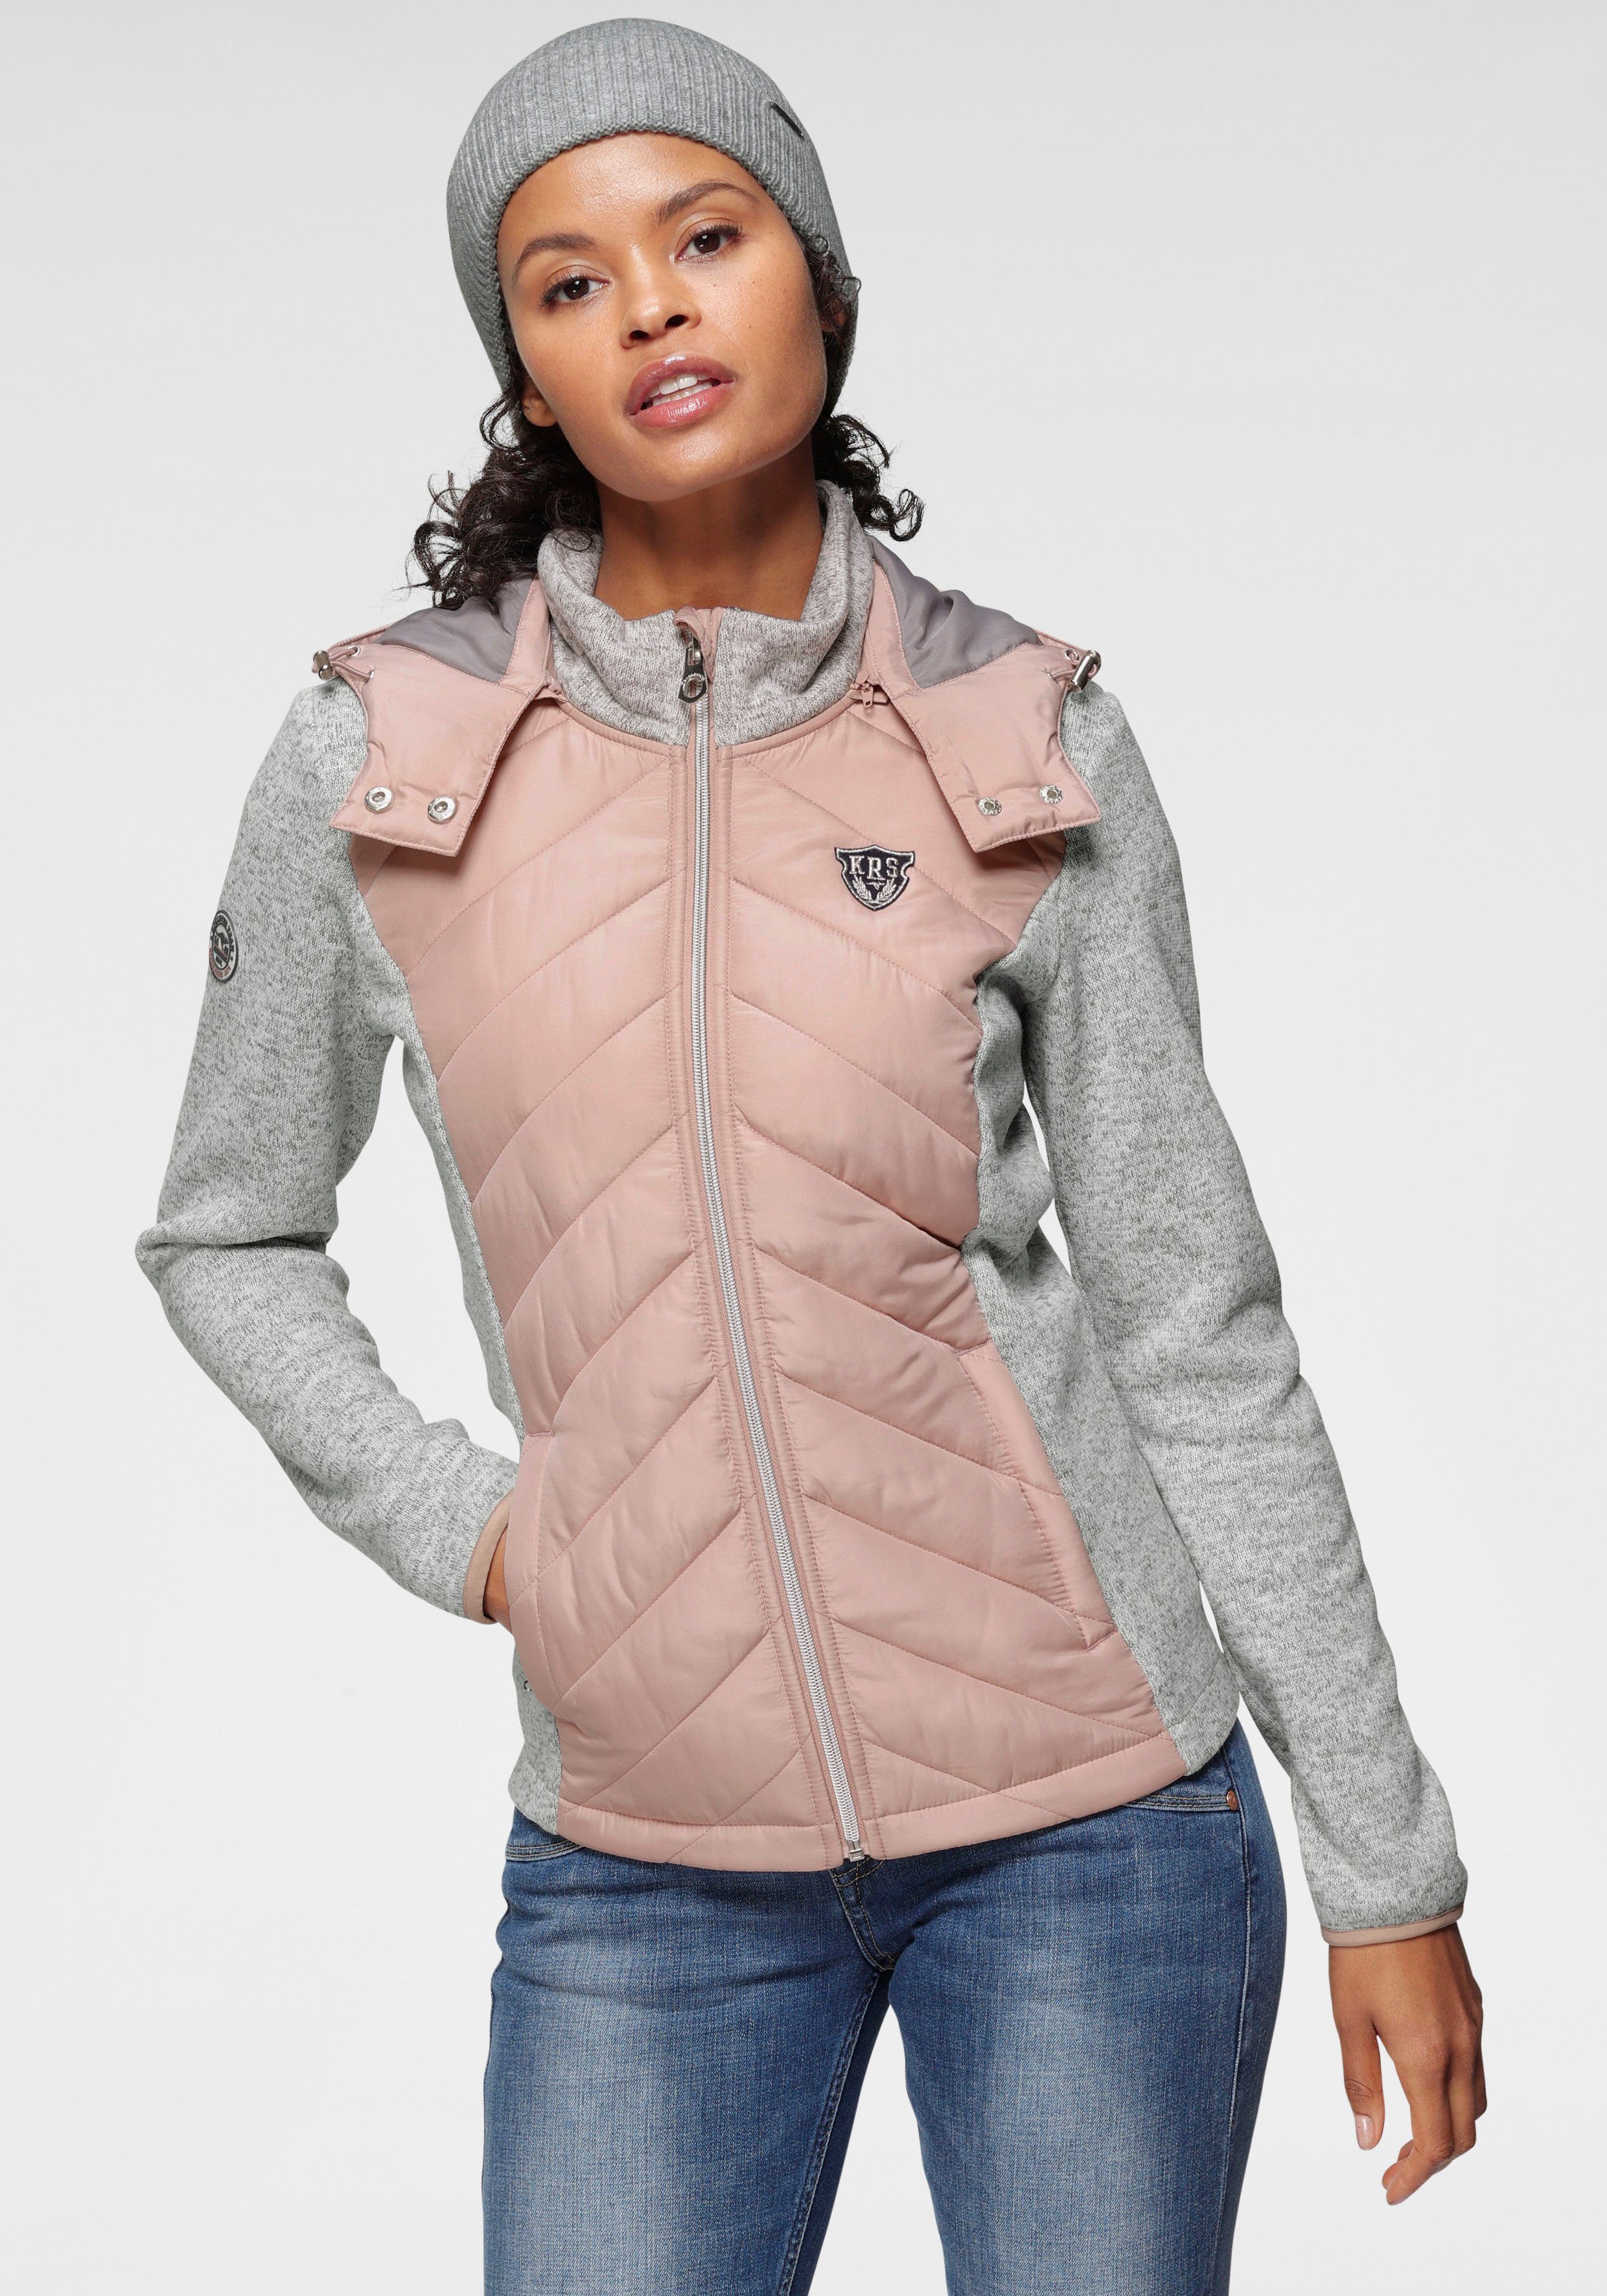 KangaROOS Kurzjacke im trendigen 2-In-1 Look rosa-grau (Jacke aus nachhaltigem Material)